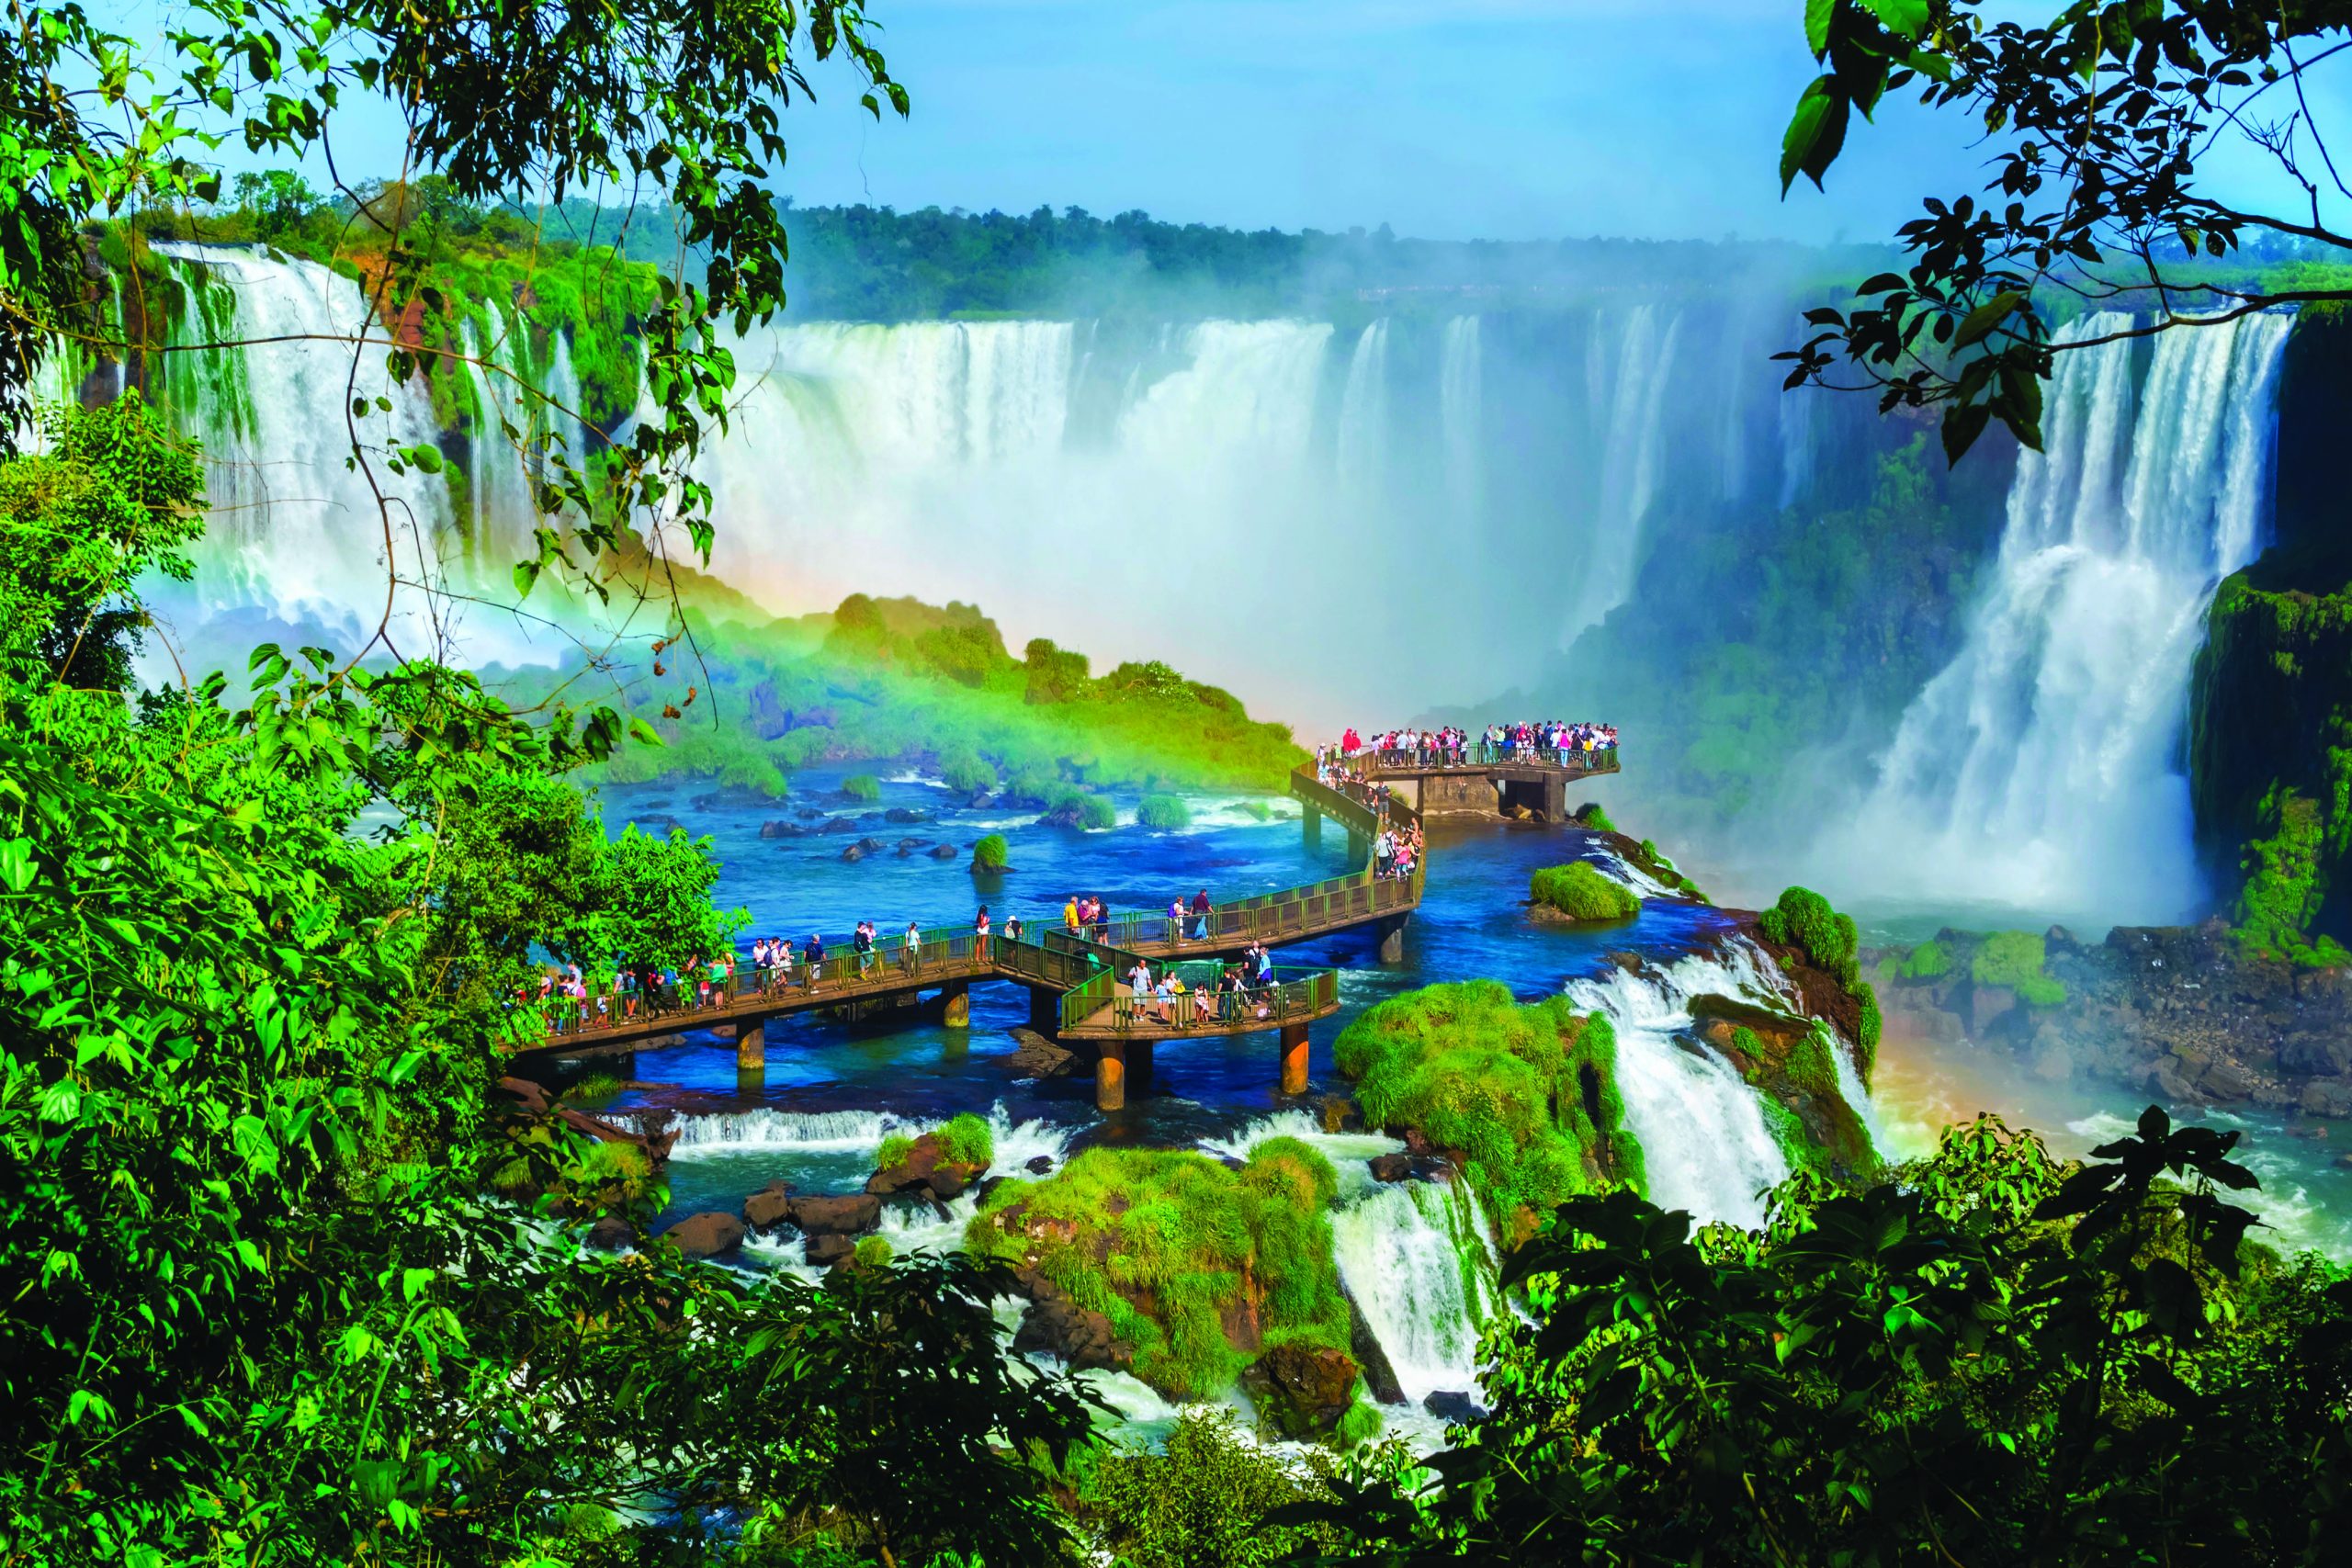 Iguazu Falls - SouthAmerica.Travel